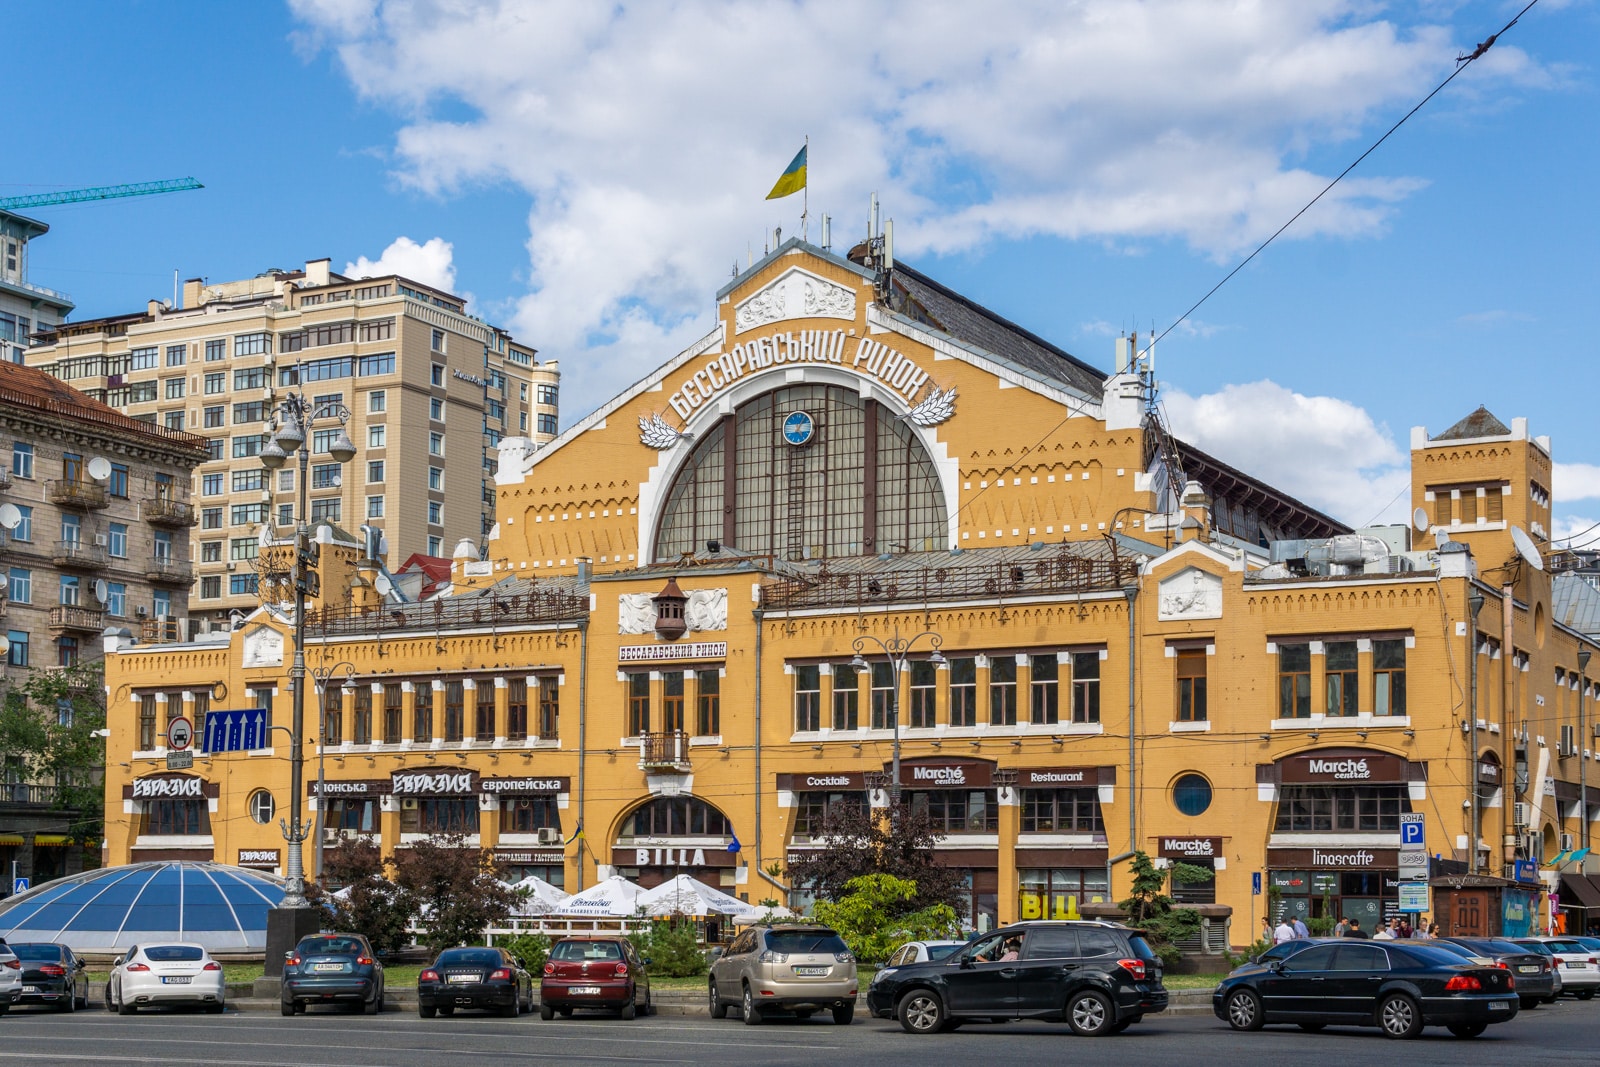 Besarabsky Market in Kyiv, Ukraine